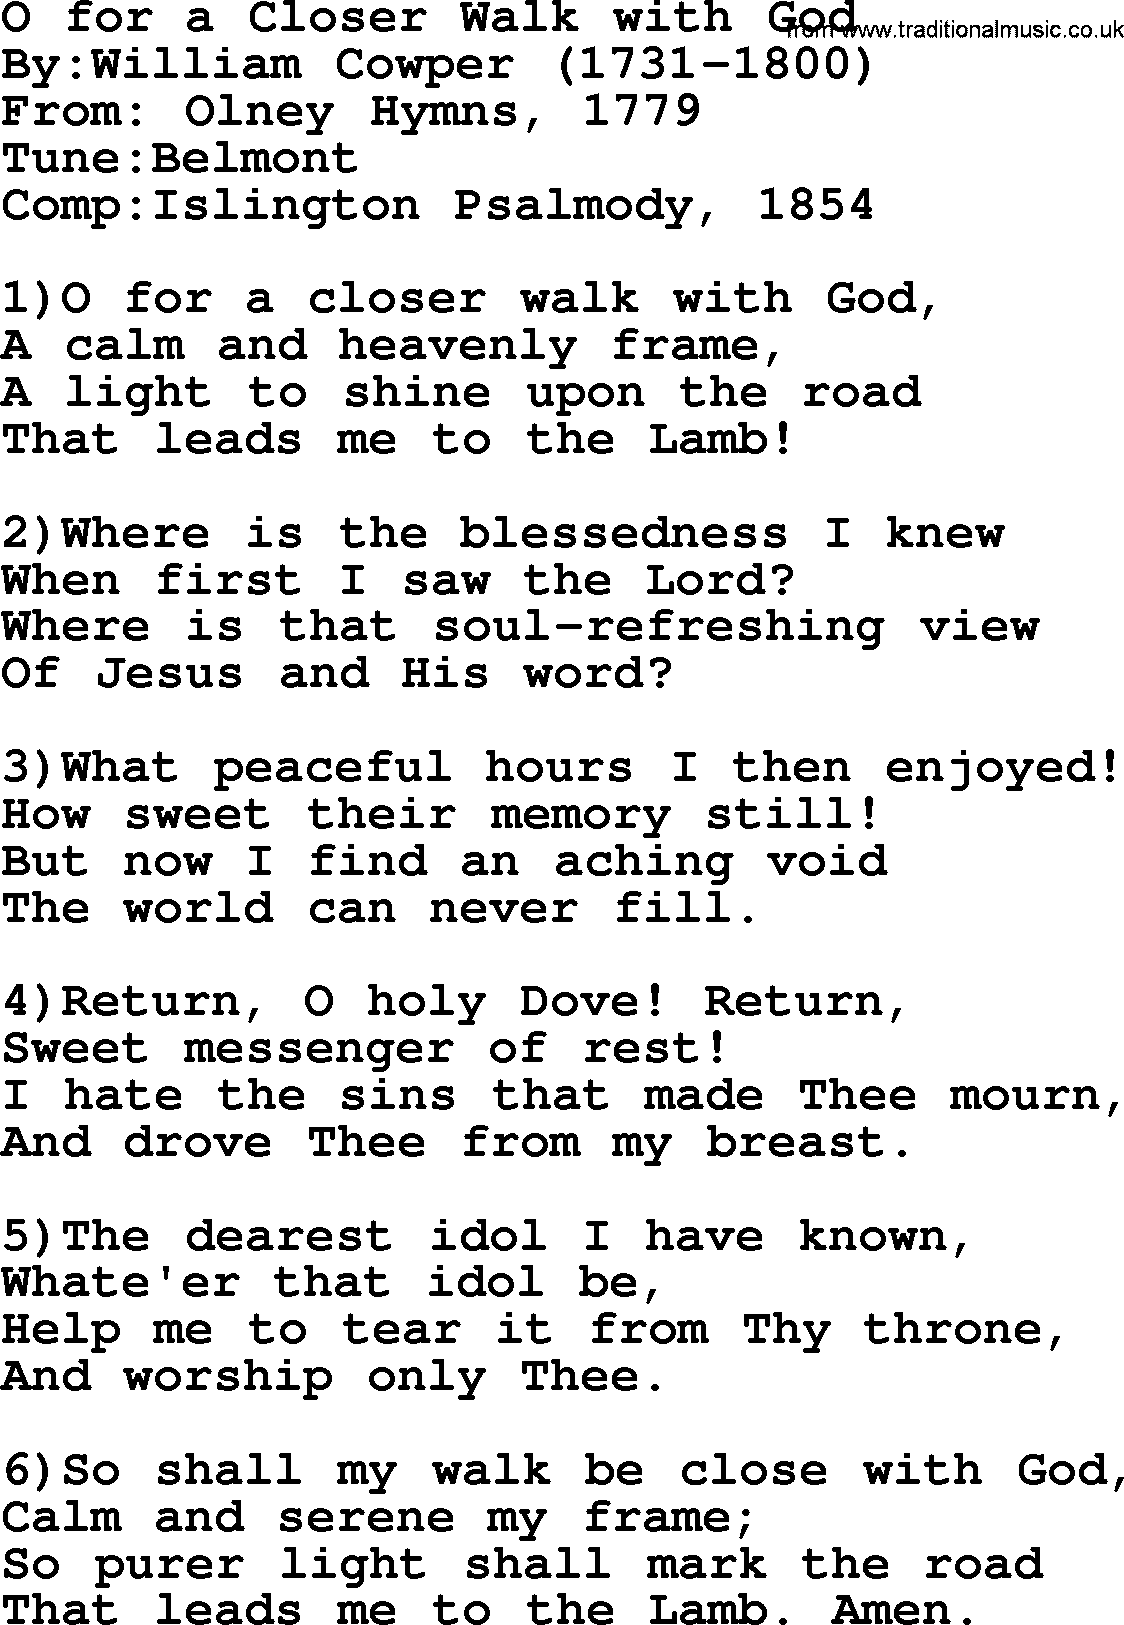 Methodist Hymn: O For A Closer Walk With God, lyrics